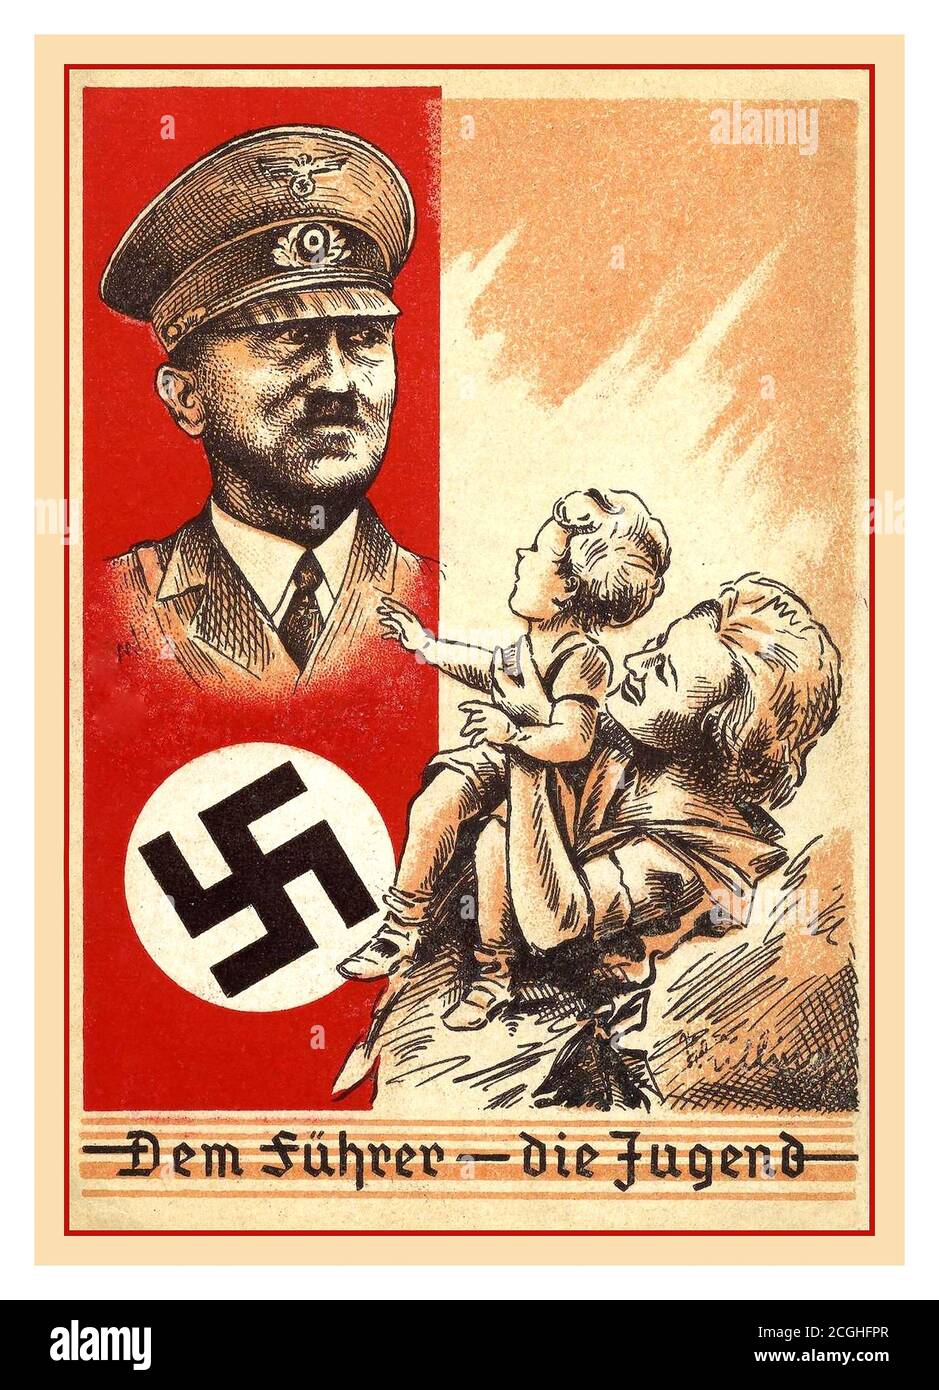 ADOLF HITLER1930 Nazi-Deutschland Propaganda Postkarte 'dem Führer - Die Jugend' ‘der Führer- die Jugend’ Adolf Hitler und Hakenkreuz Mit einer deutschen Mutter und einem Kind, das aufschaut Ihn in Bewunderung Stockfoto